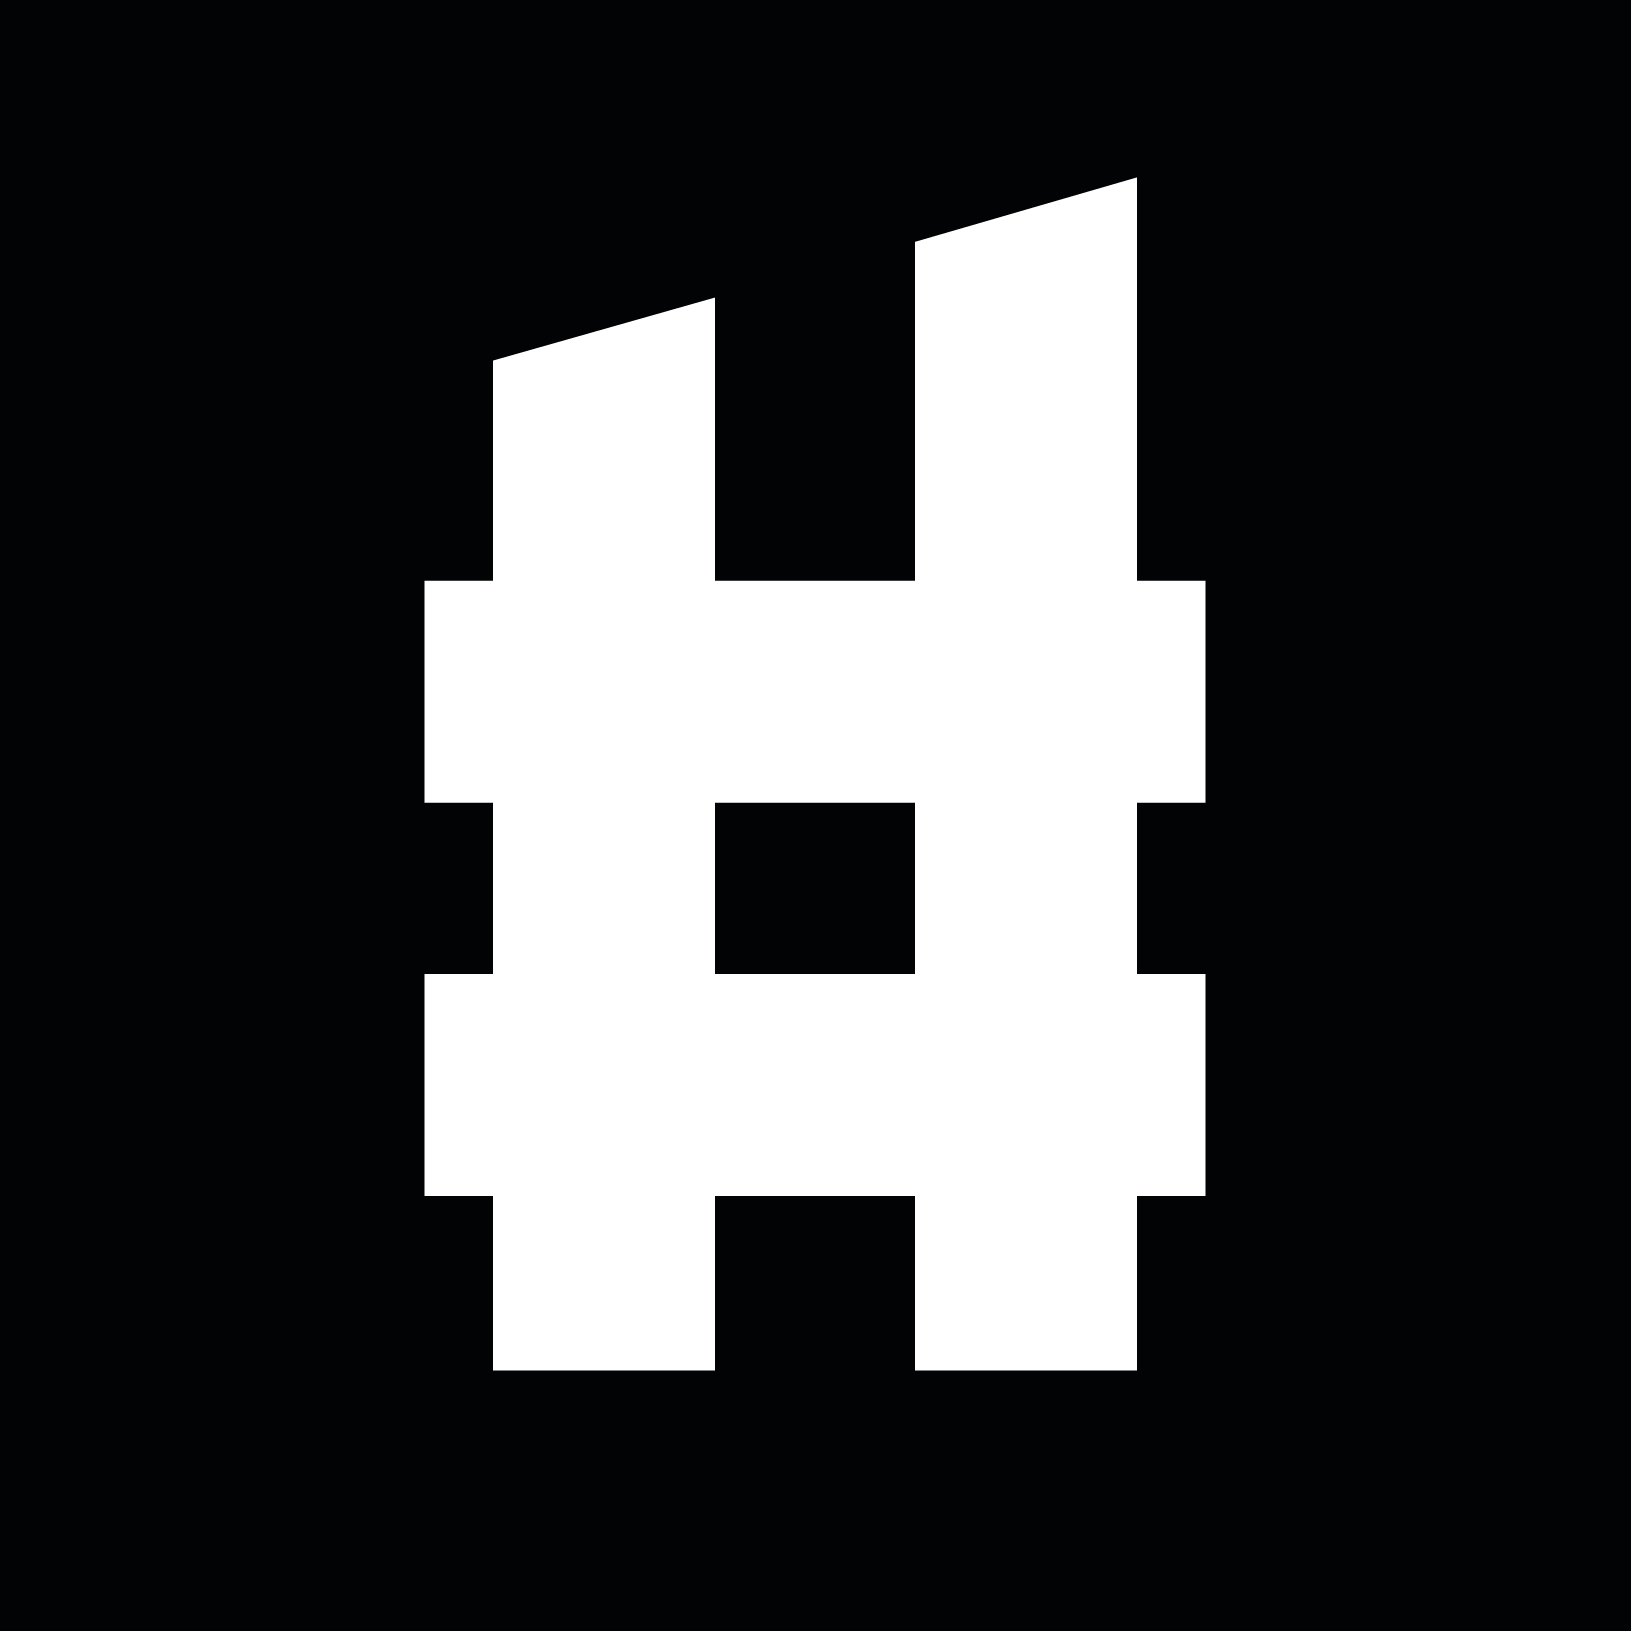 engage.hashtagsports.com